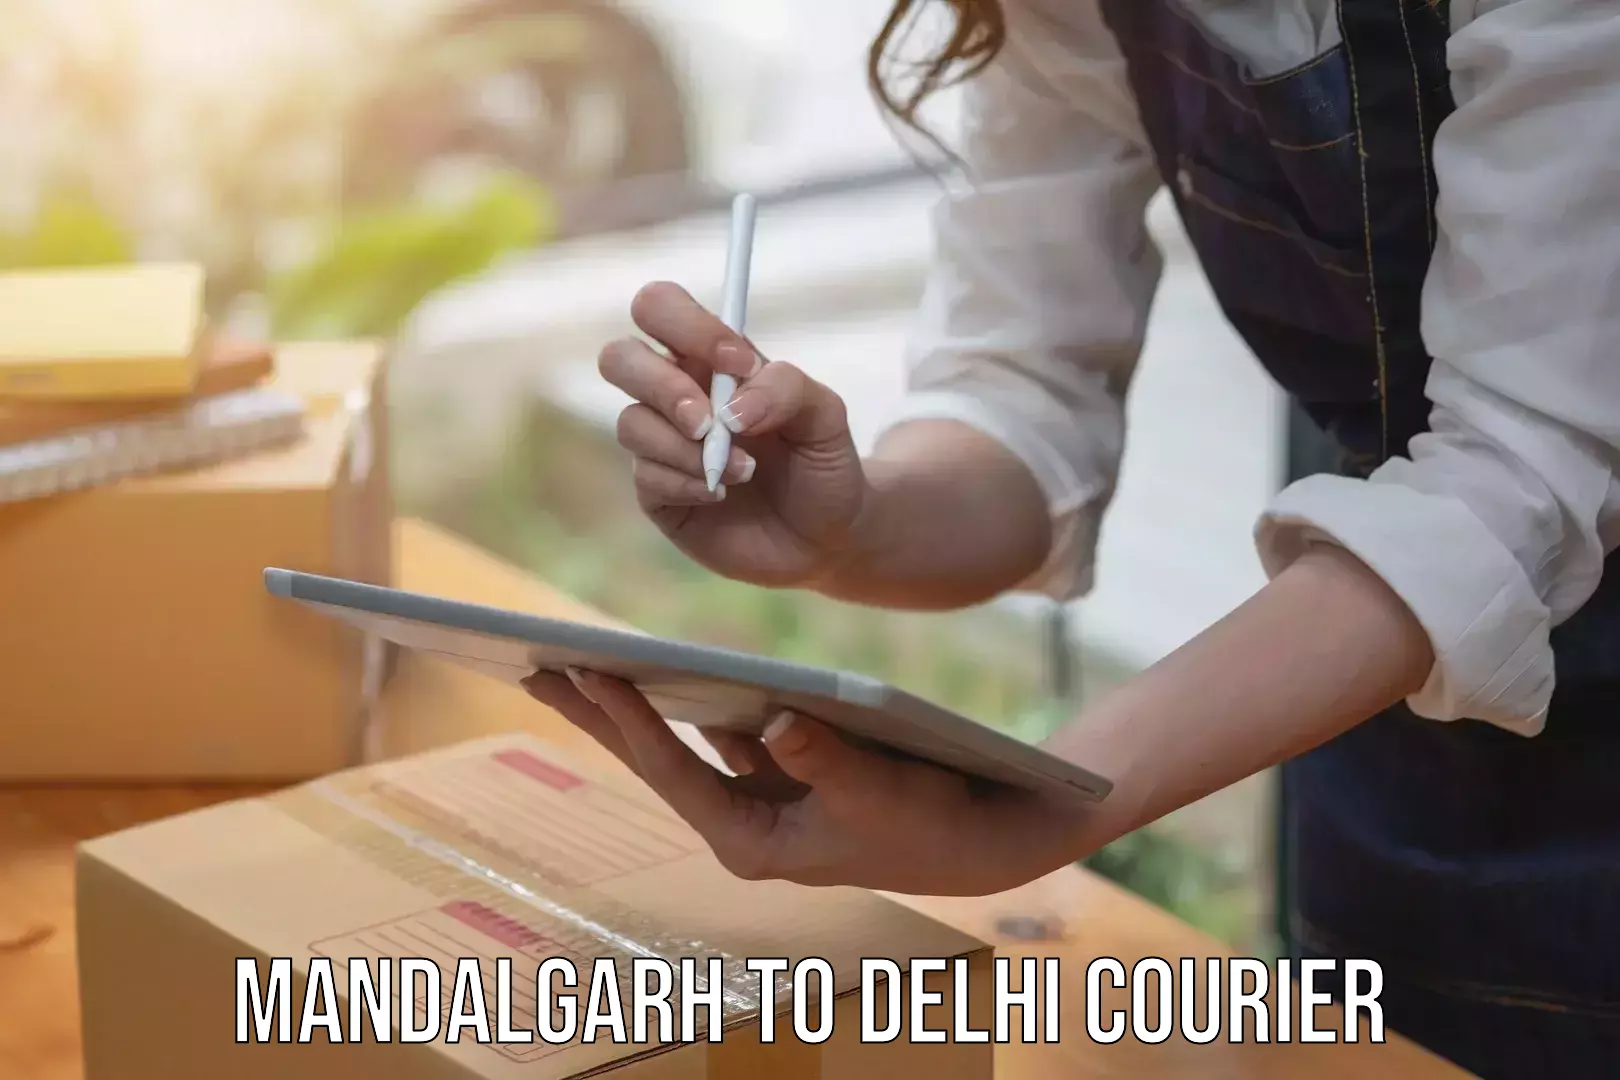 Courier app Mandalgarh to University of Delhi